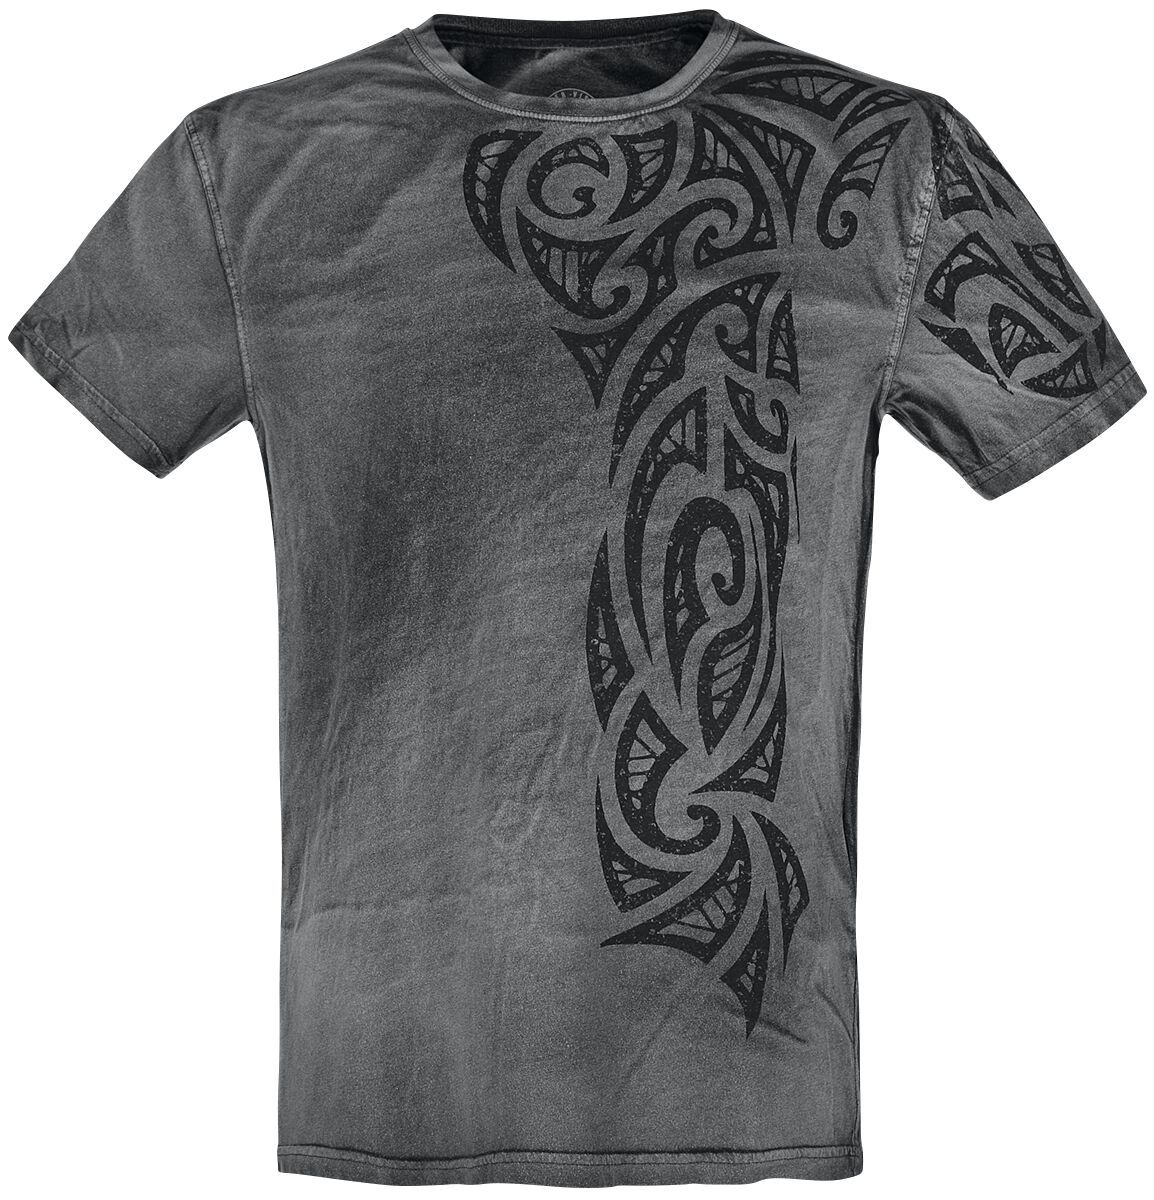 Outer Vision T-Shirt - Gothic Tattoo - S bis 4XL - für Männer - Größe 4XL - grau